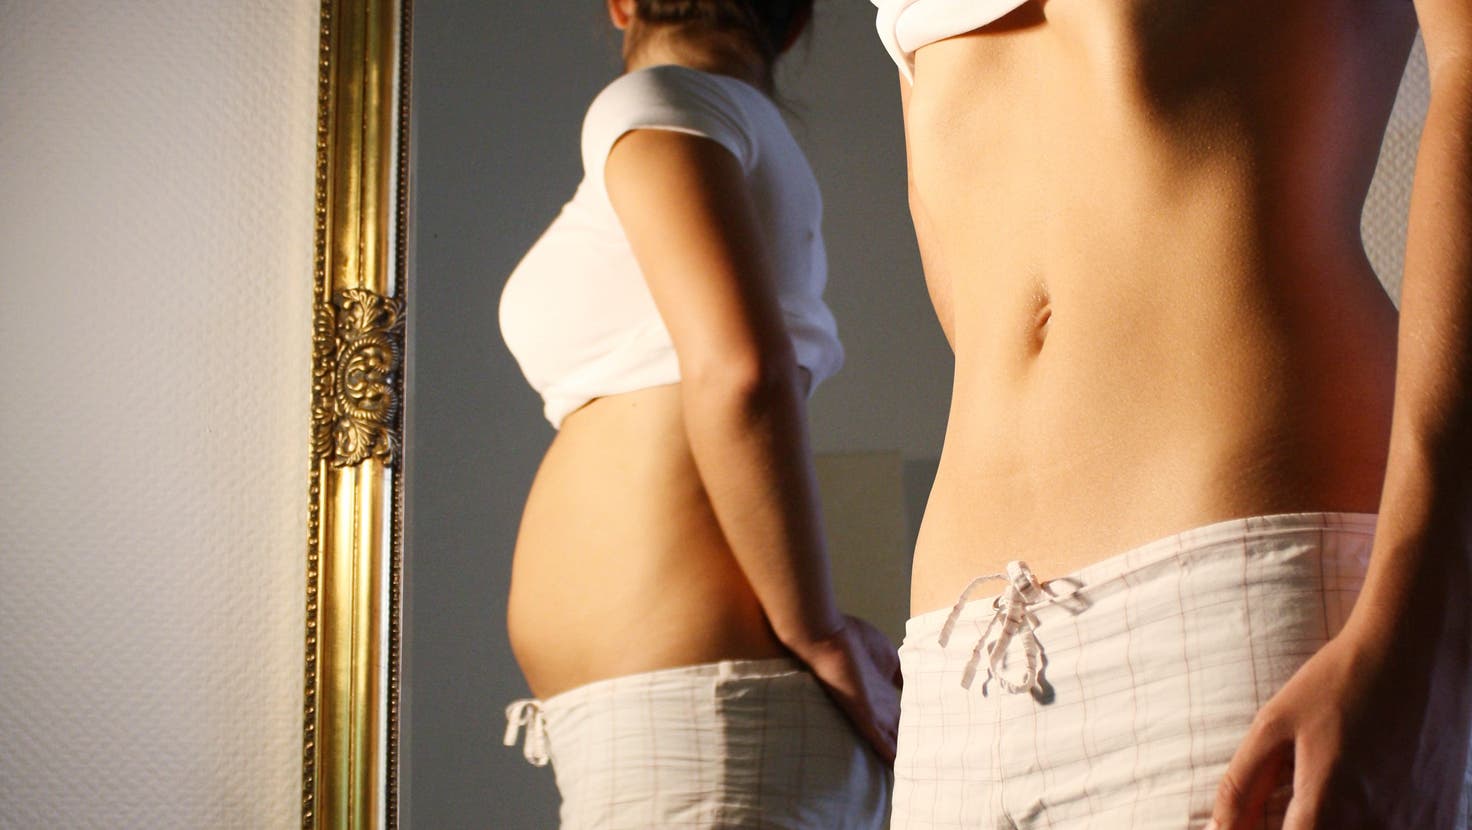 Oft stimmt bei einer Essstörung das Bild im Spiegel nicht mit der Realität überein. Man fühlt sich noch zu dick, wenn man längst viel zu mager ist. (Archiv)